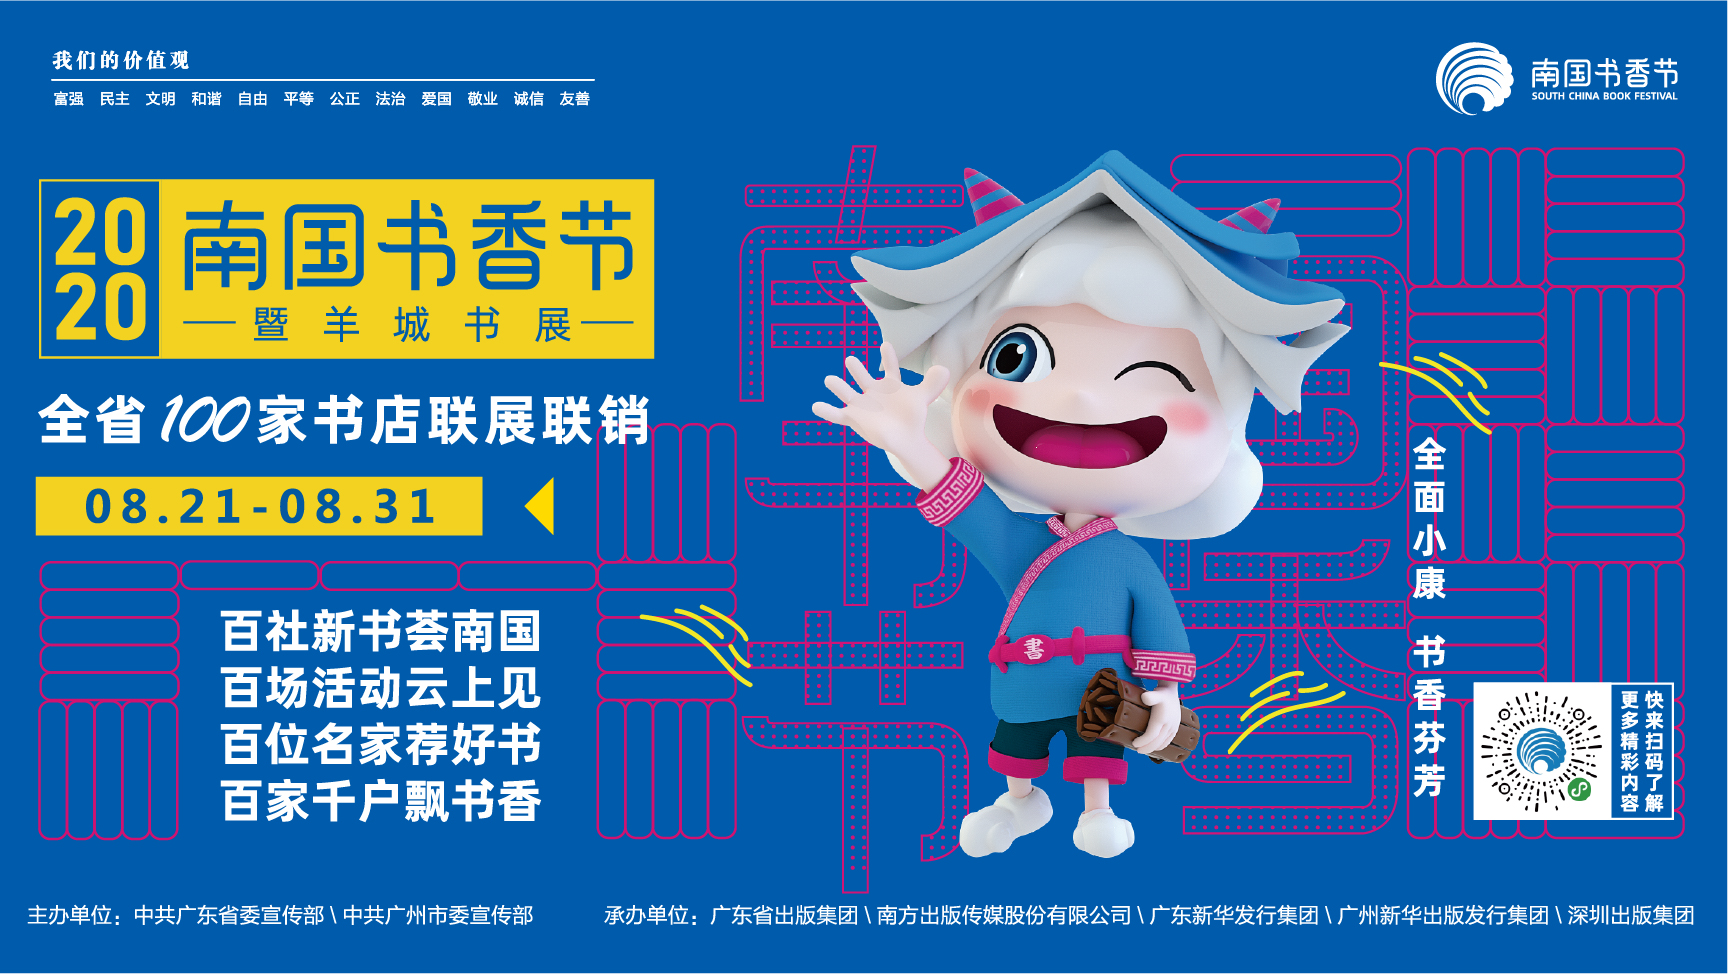 8月21日-31日，全省150个分会场联动，2020南国书香节来了！